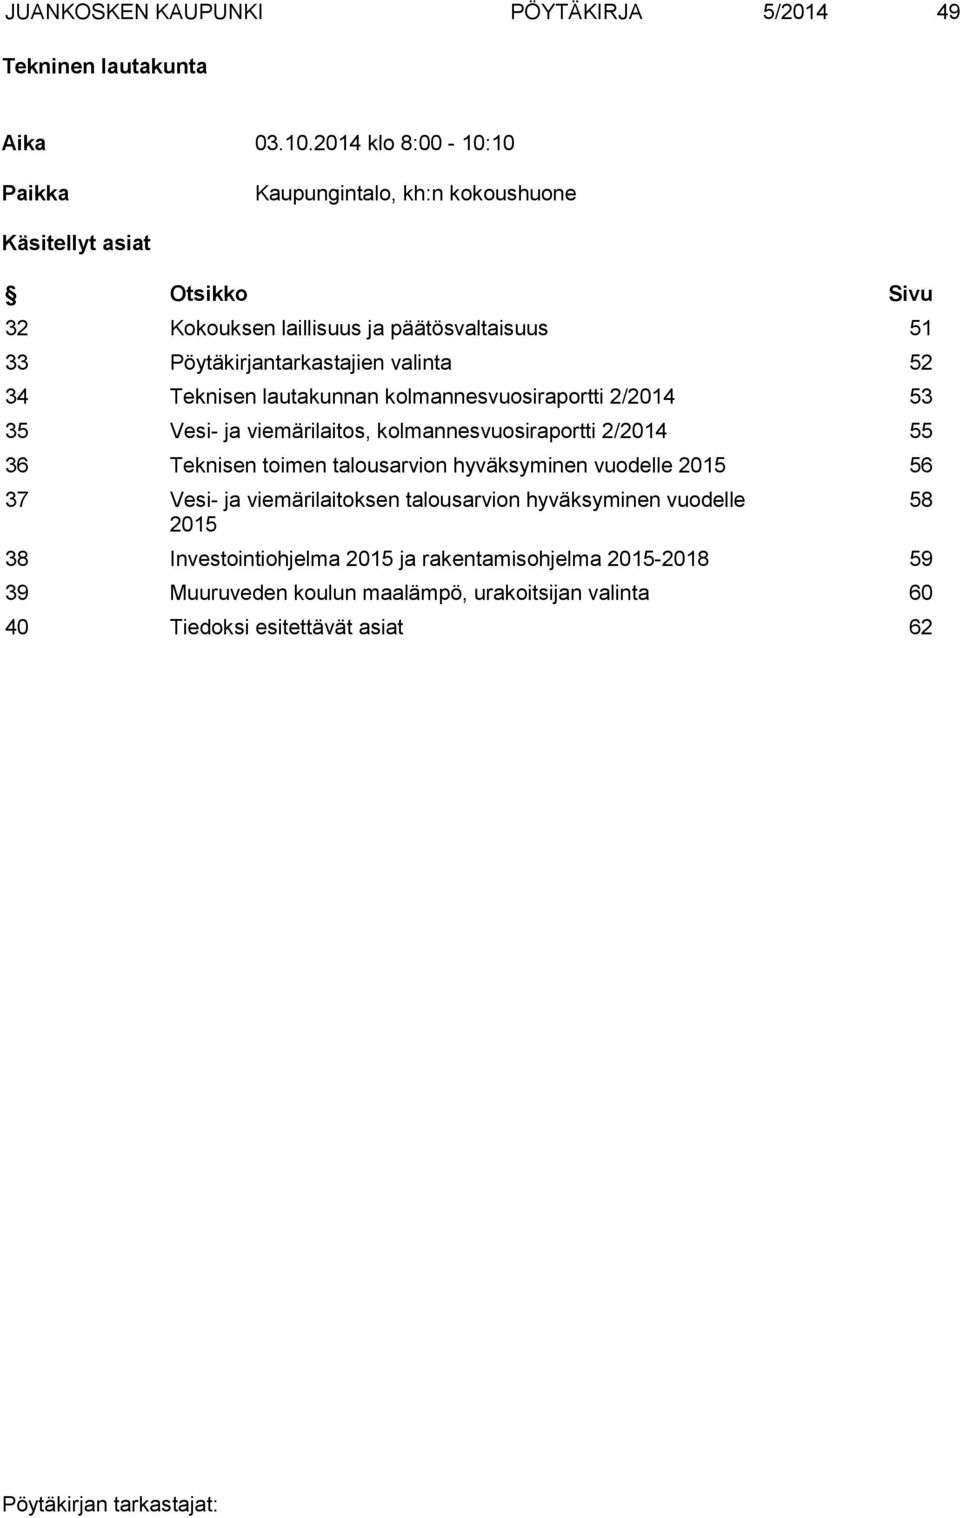 Pöytäkirjantarkastajien valinta 52 34 Teknisen lautakunnan kolmannesvuosiraportti 2/2014 53 35 Vesi- ja viemärilaitos, kolmannesvuosiraportti 2/2014 55 36